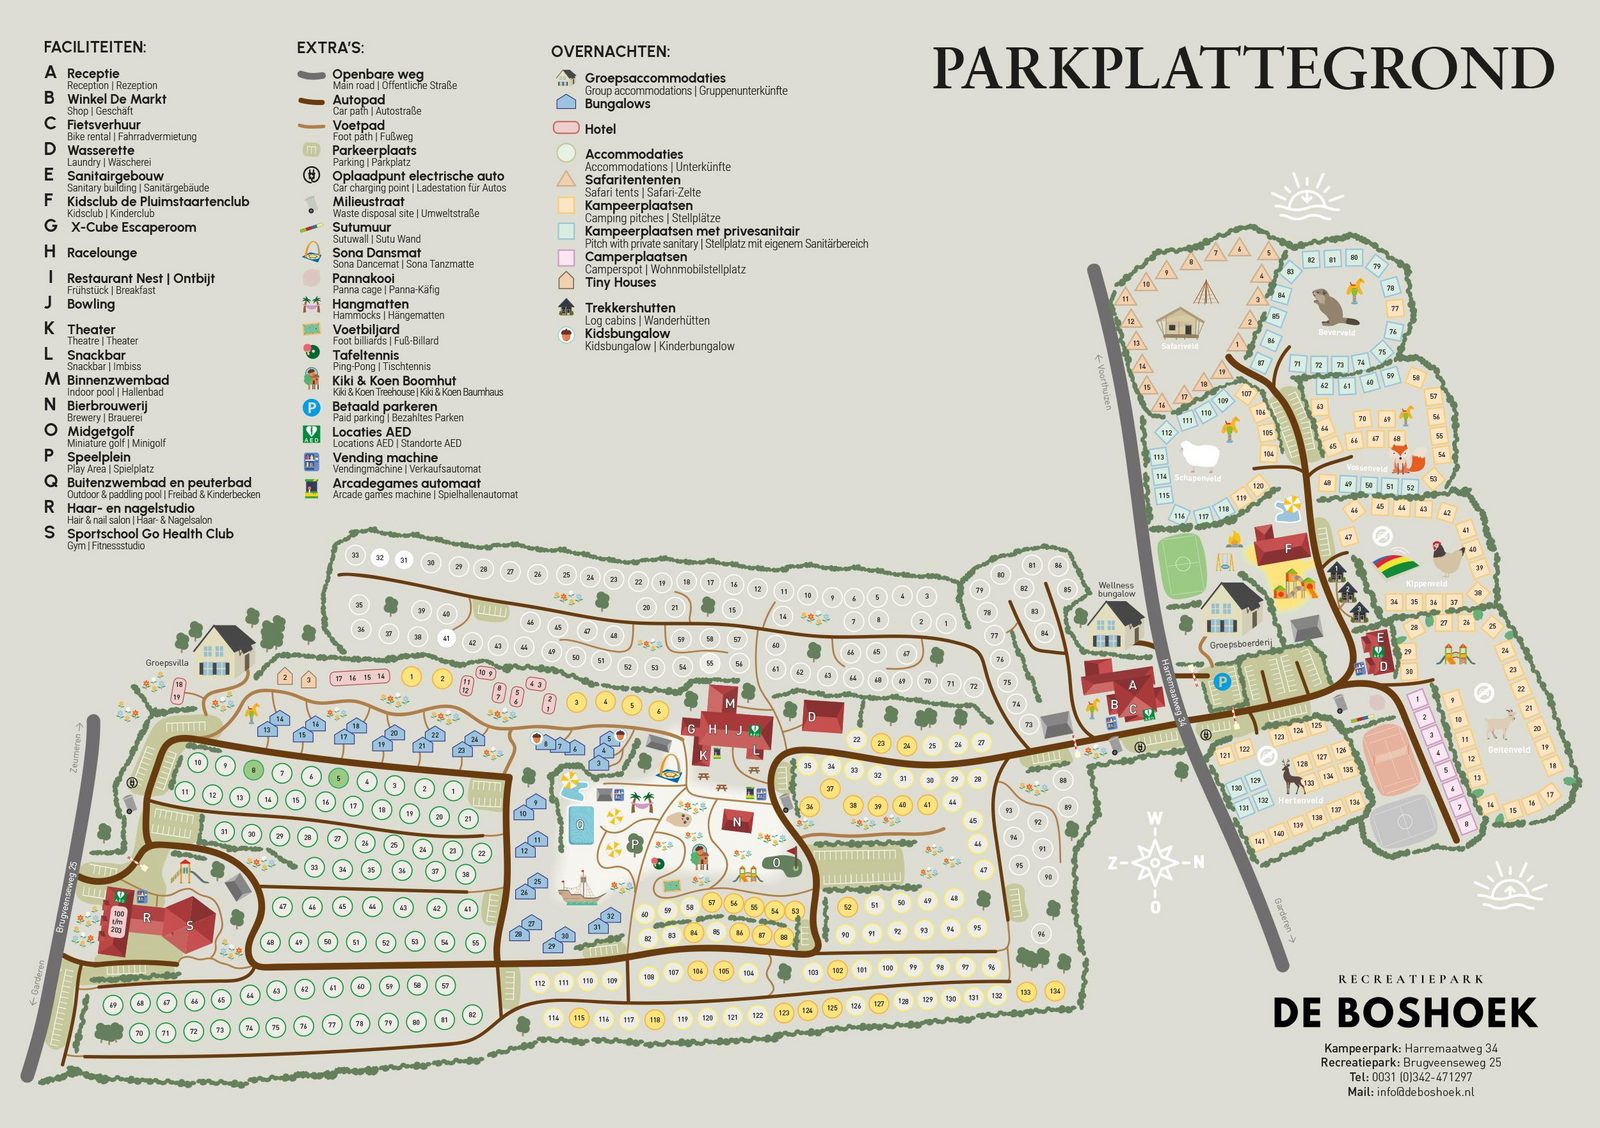 Plattegrond van Recreatiepark De Boshoek op de Veluwe in Voorthuizen